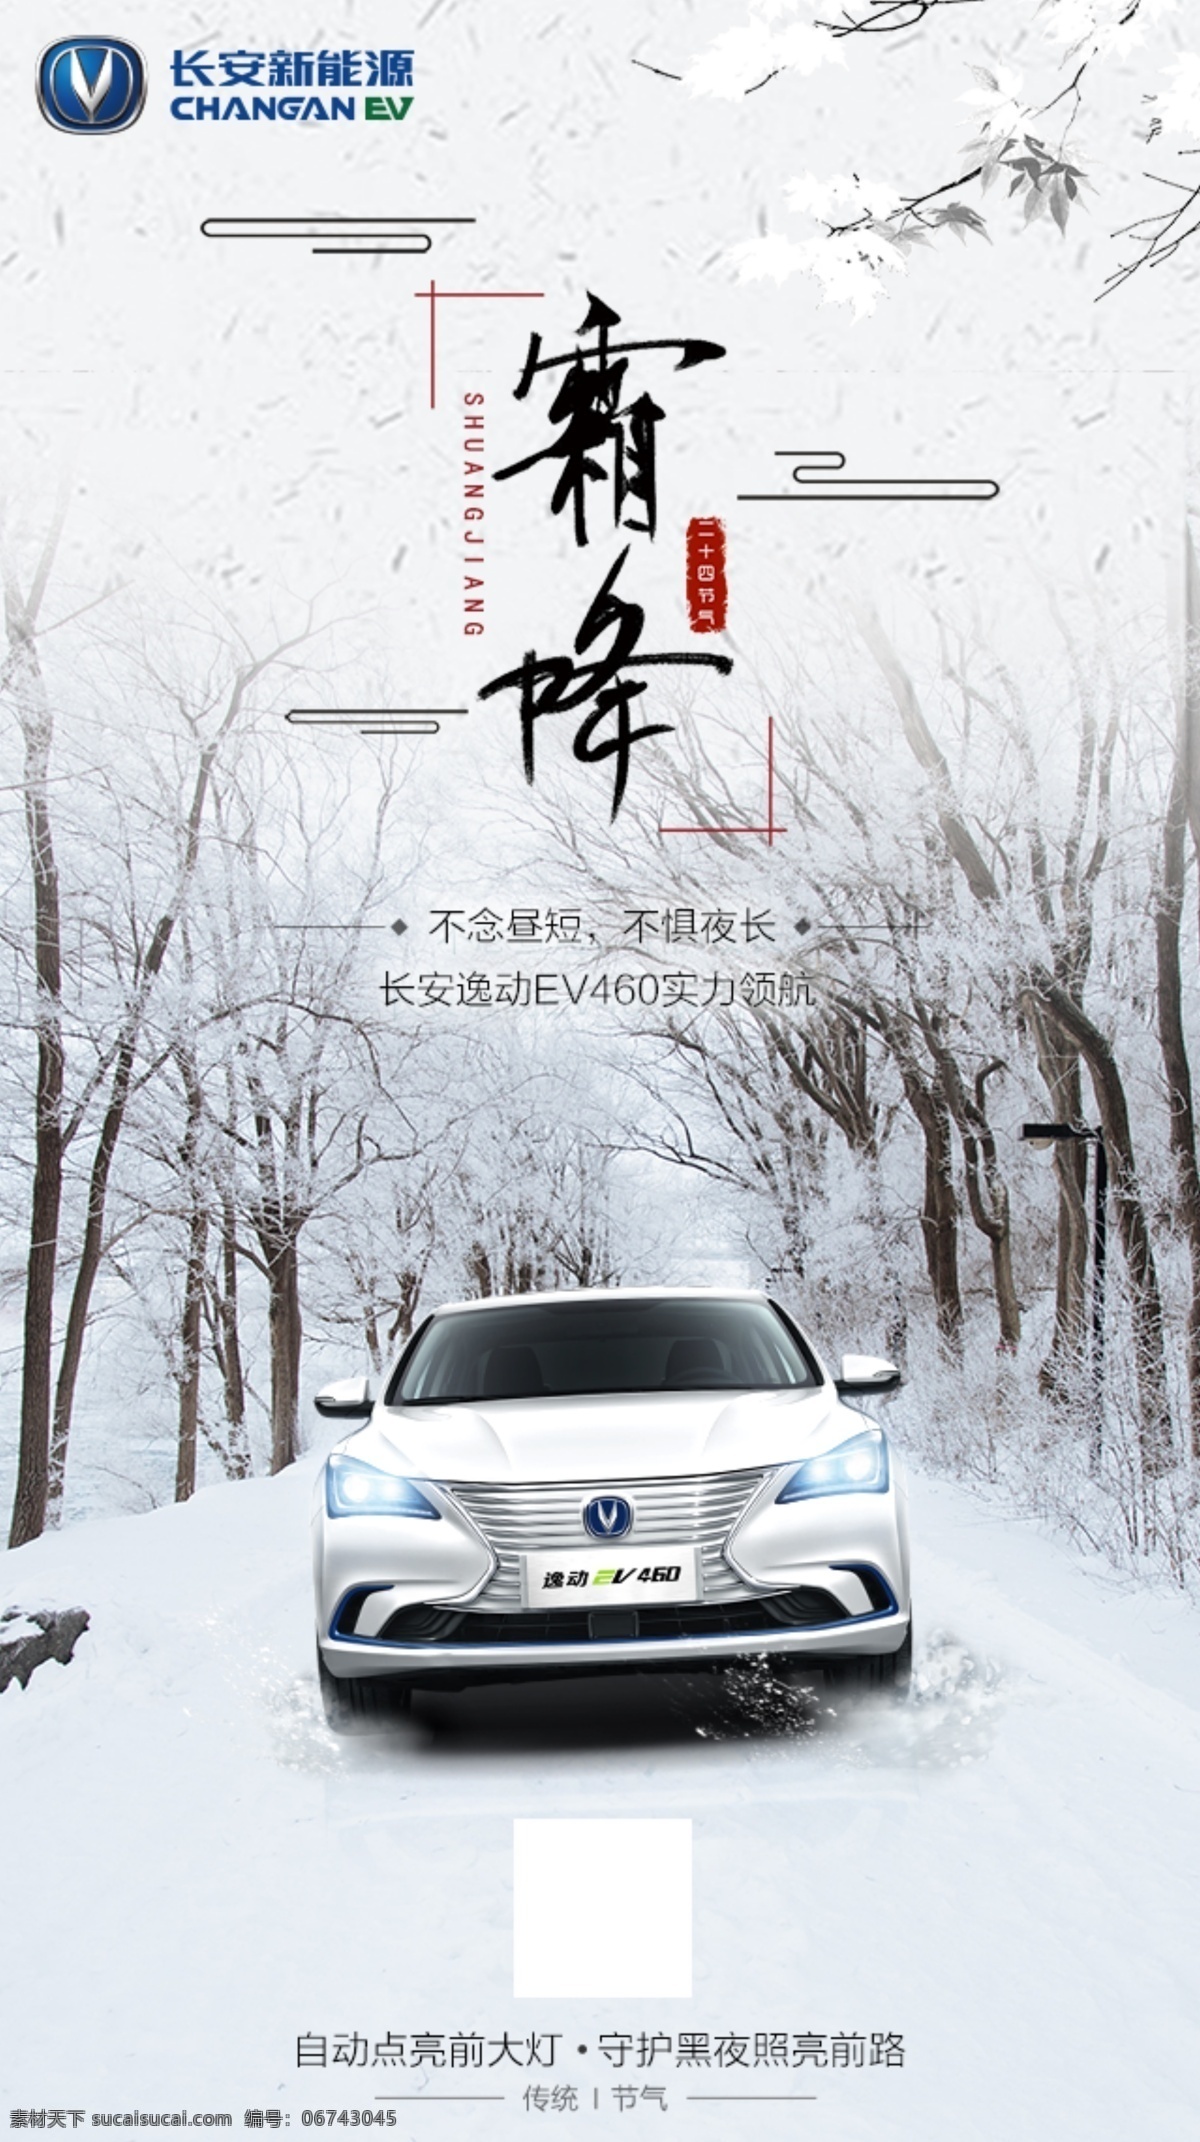 冬季 霜降 24节气 长安汽车 长安新能源 热点海报